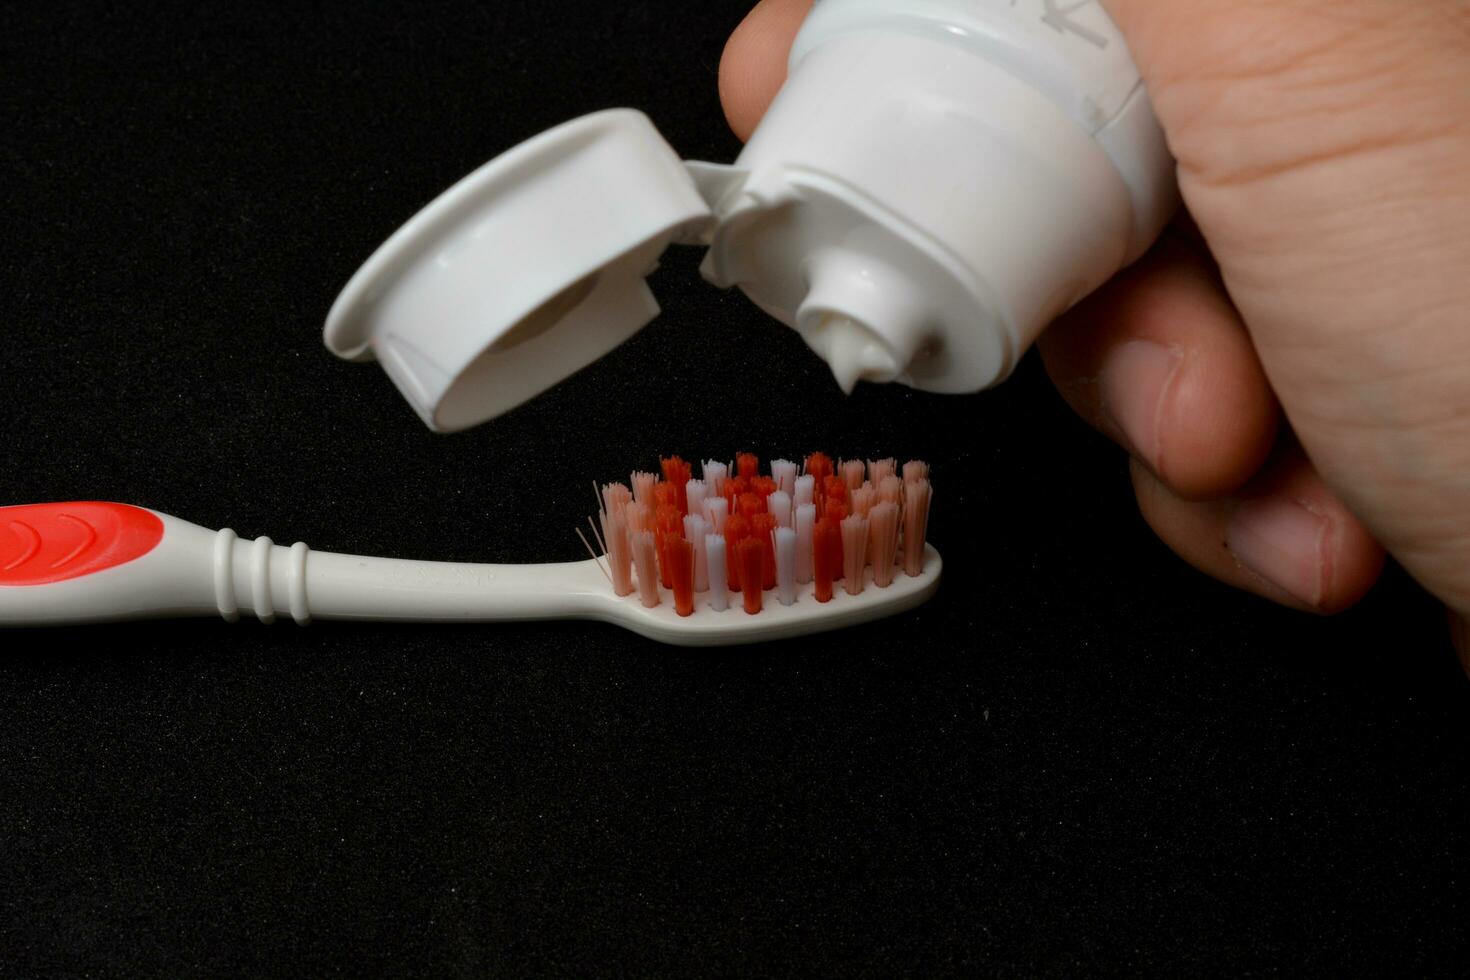 branco pasta de dentes em uma escova de dente. Preto fundo foto